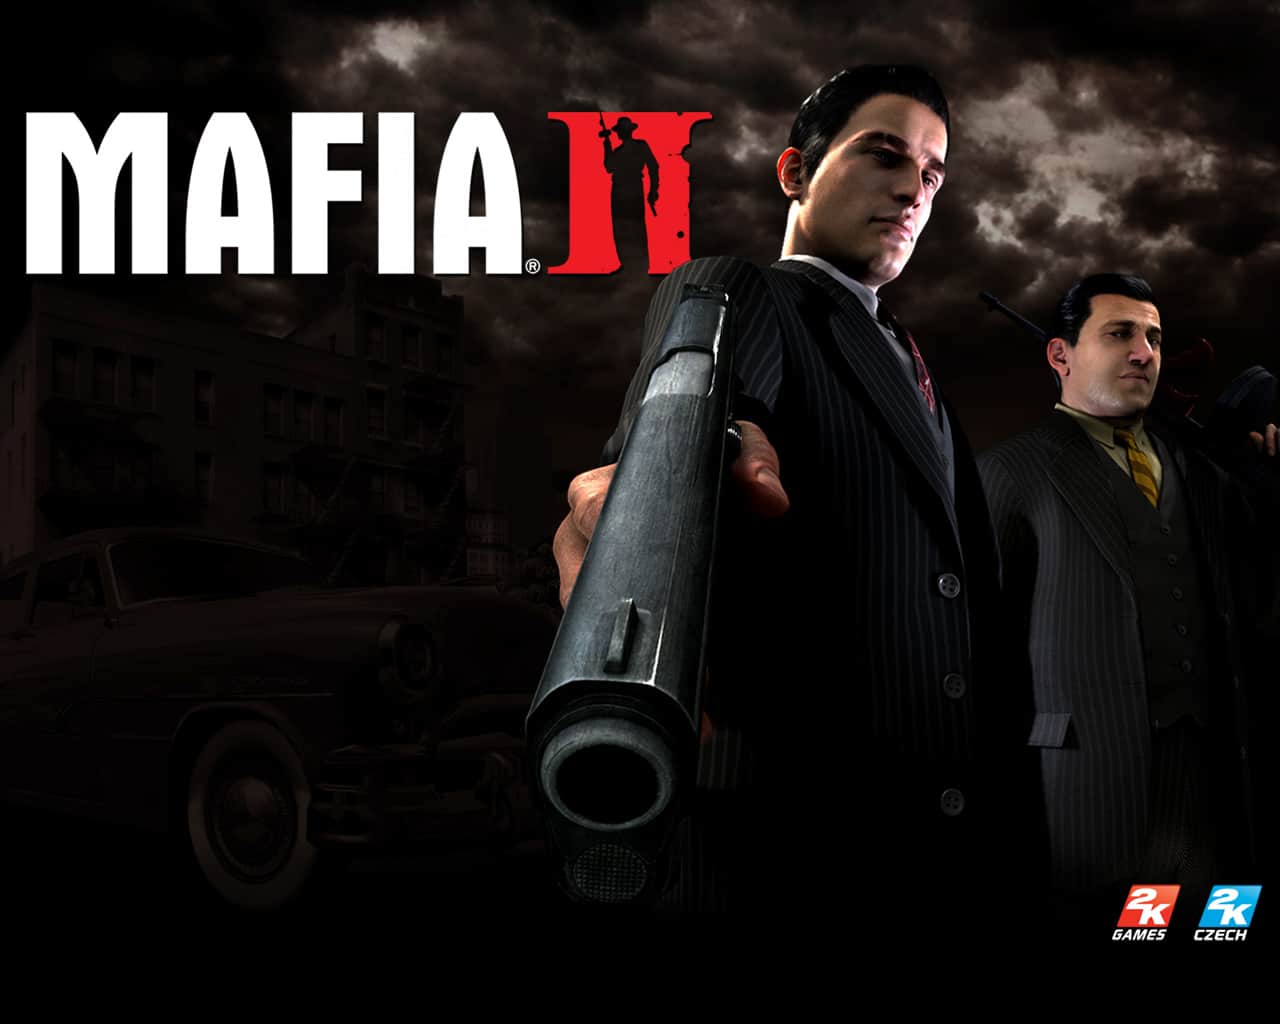 Mafia 2 wallpaper